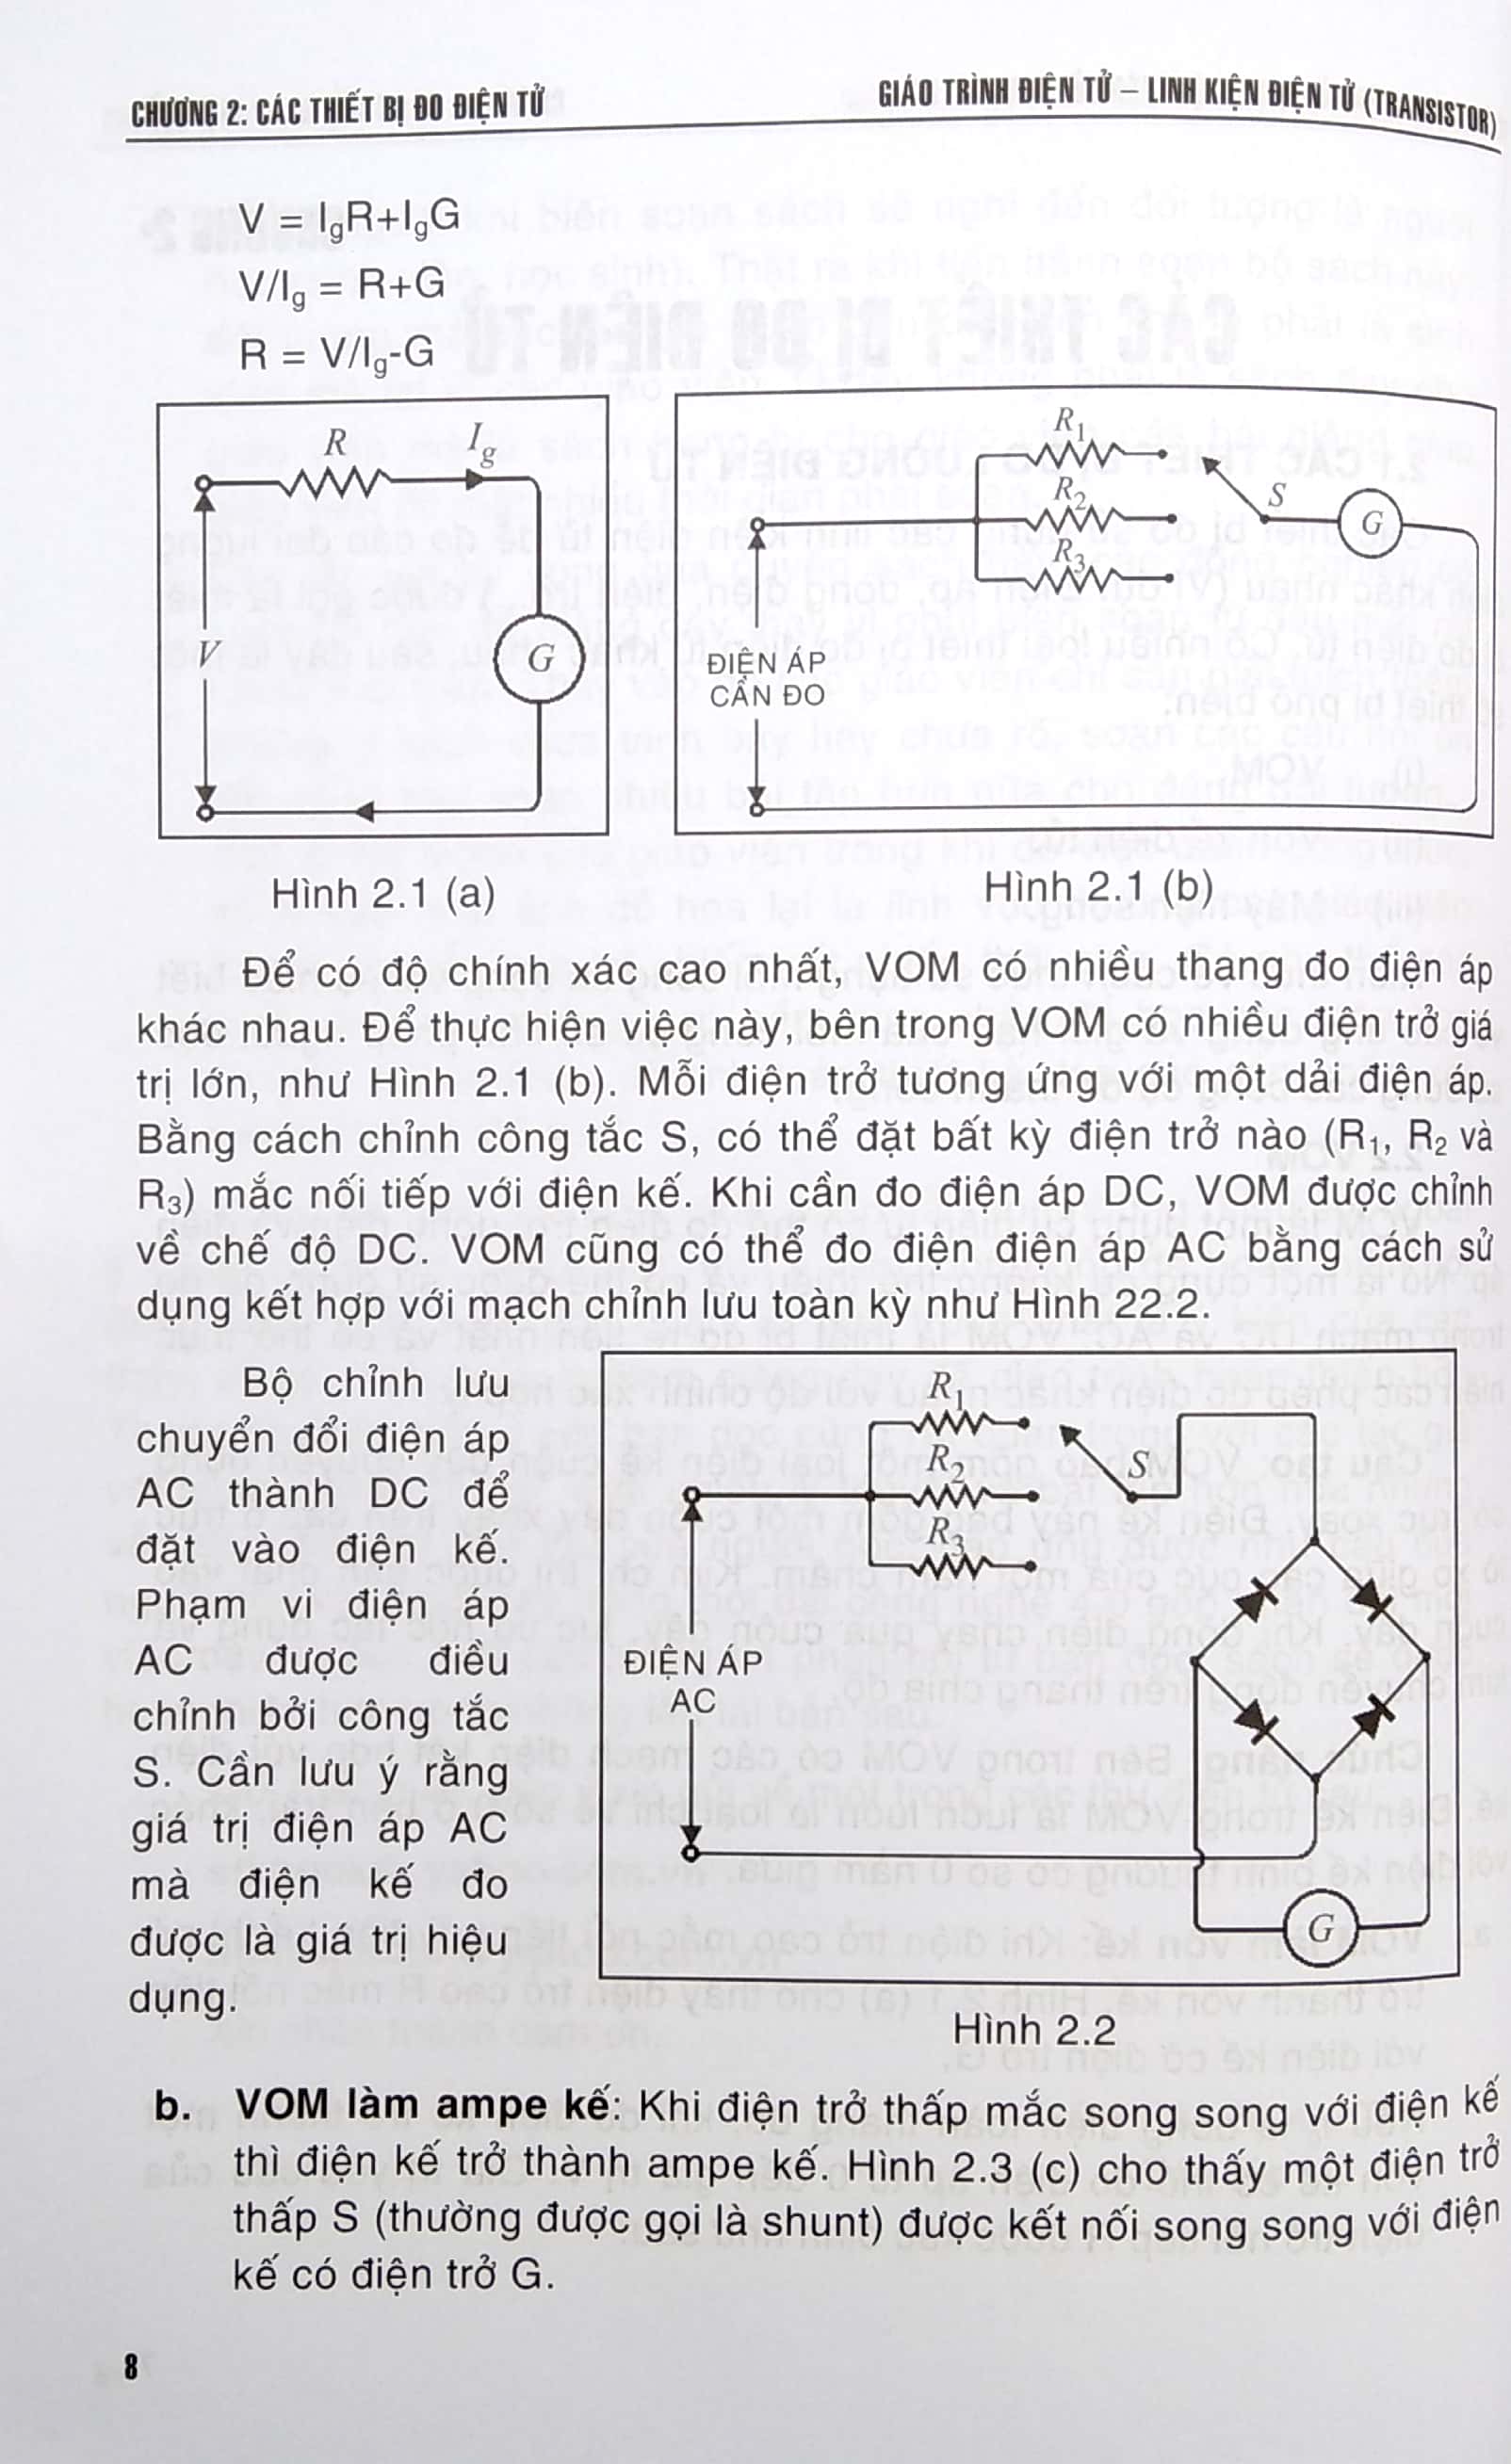 Giáo Trình Điện Tử - Linh Kiện Điện Tử Transistor PDF